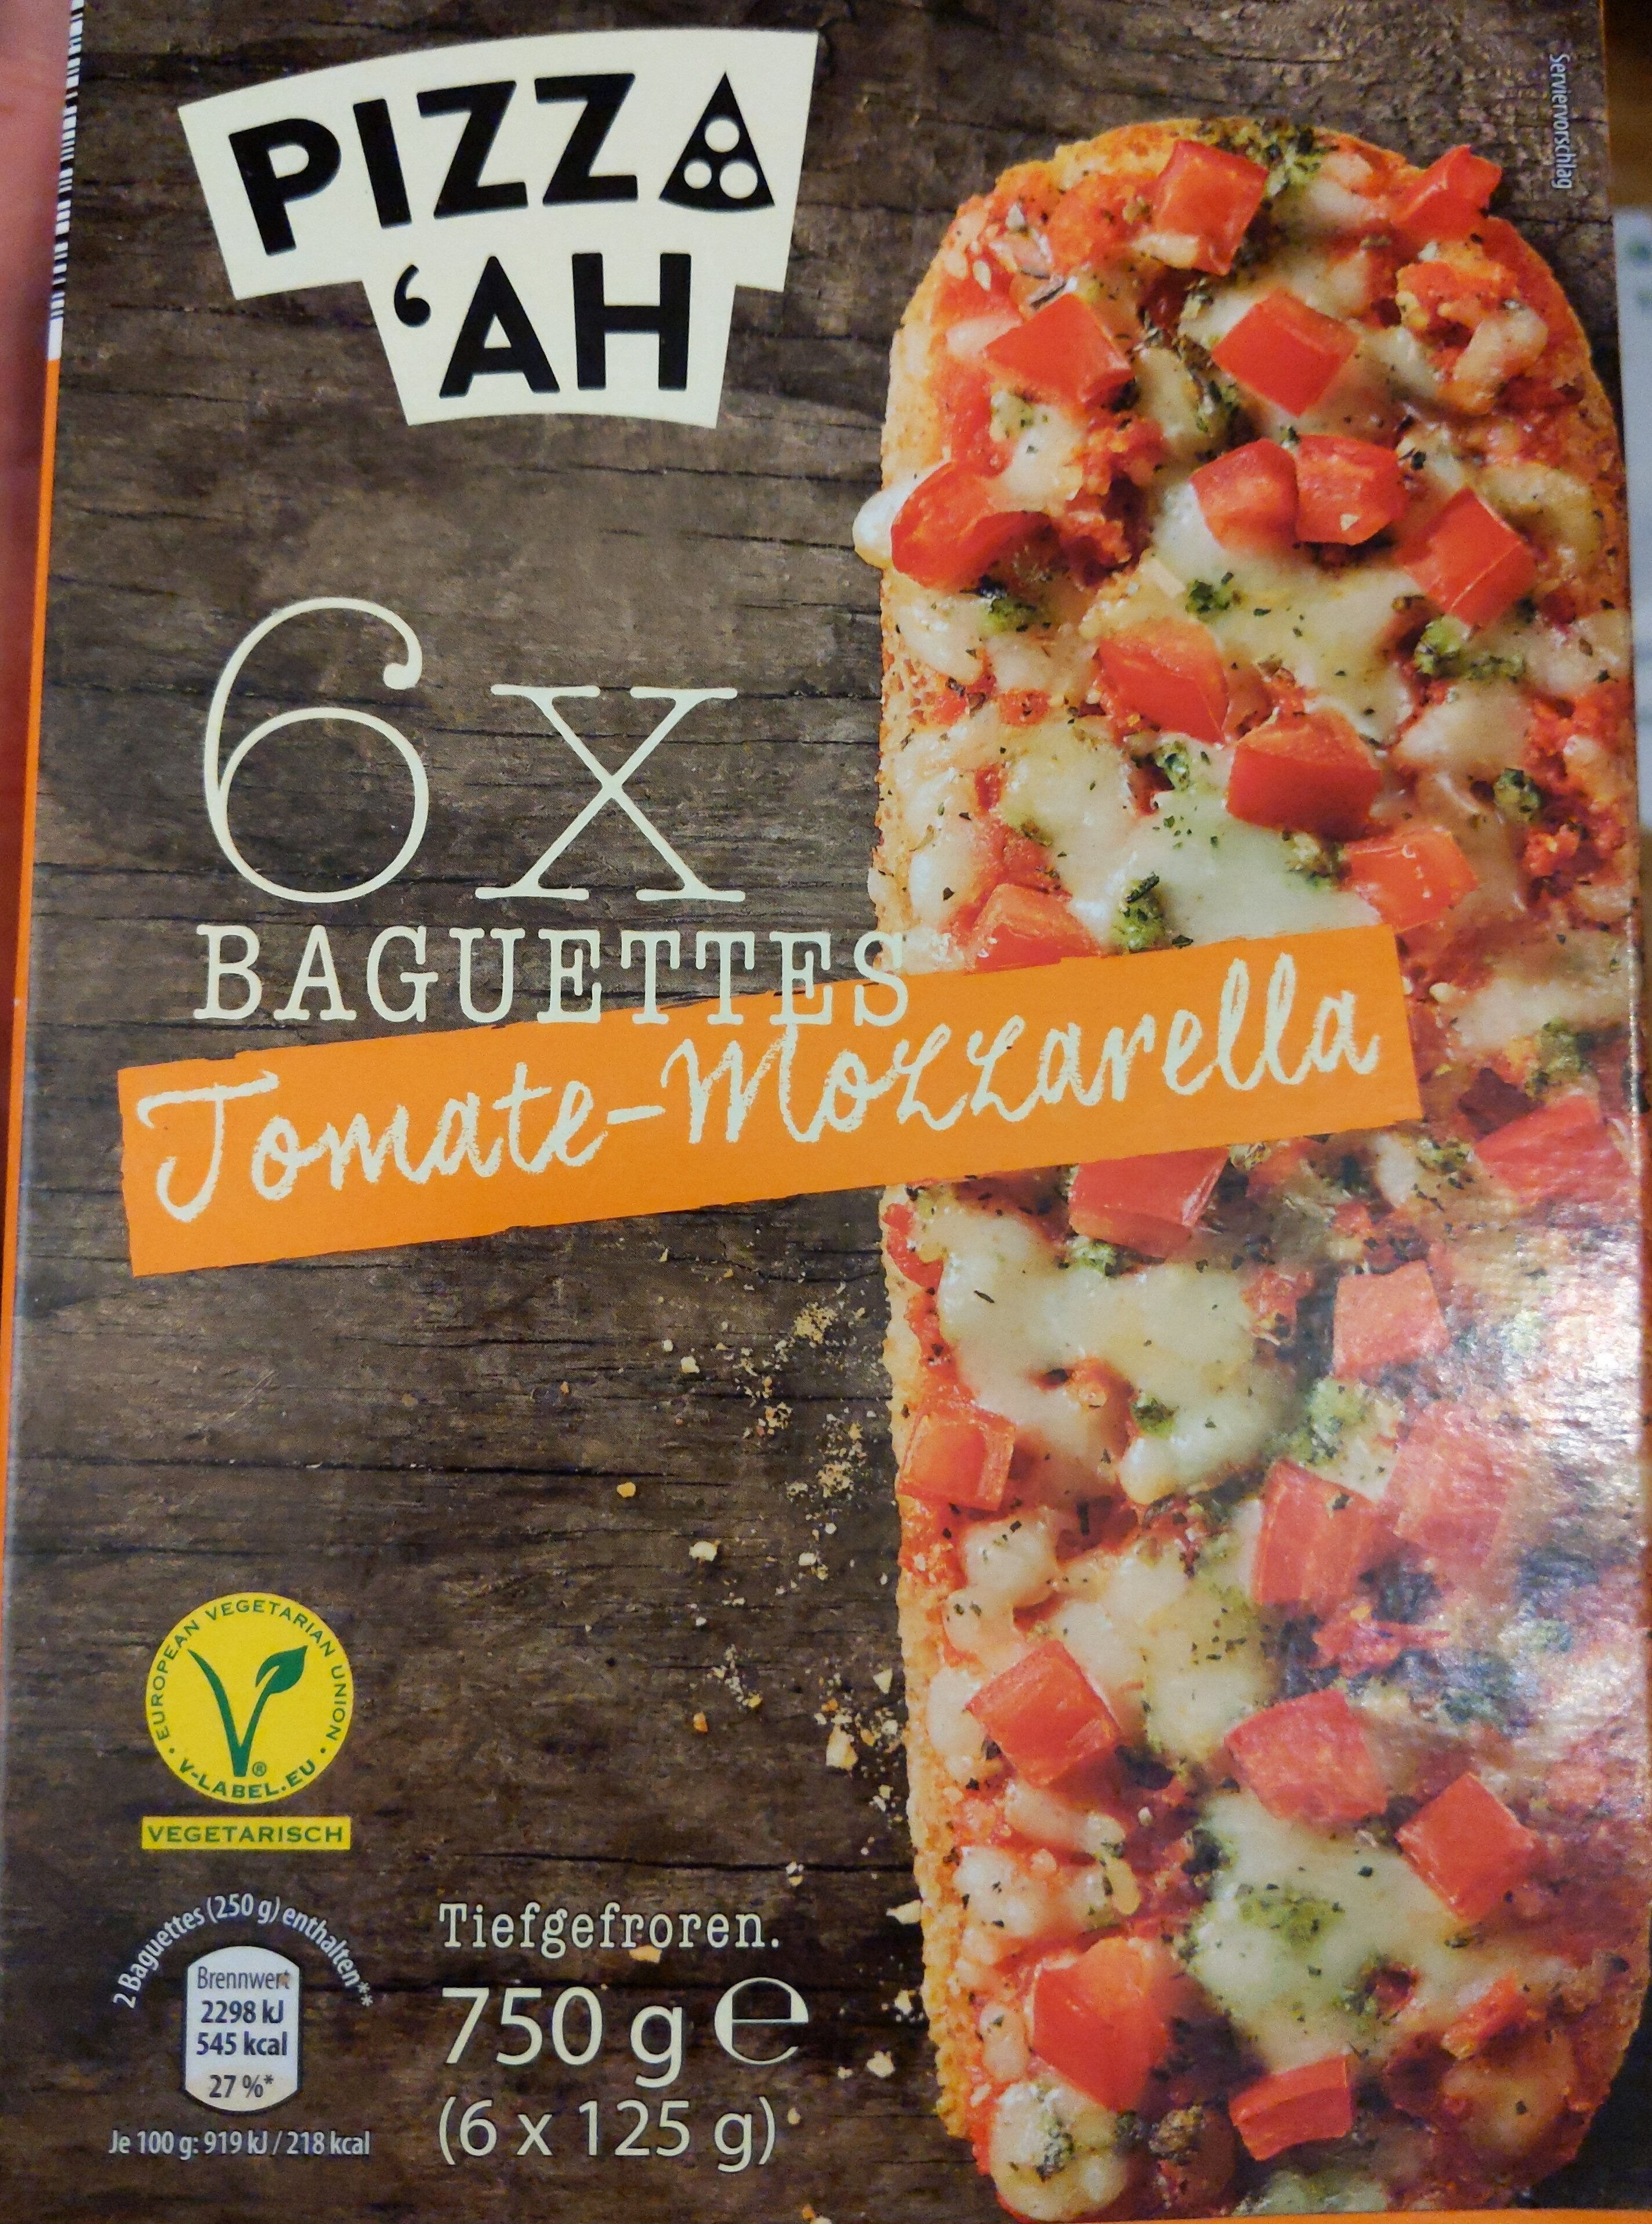 Baguettes Tomate-Mozzarella - Product - de